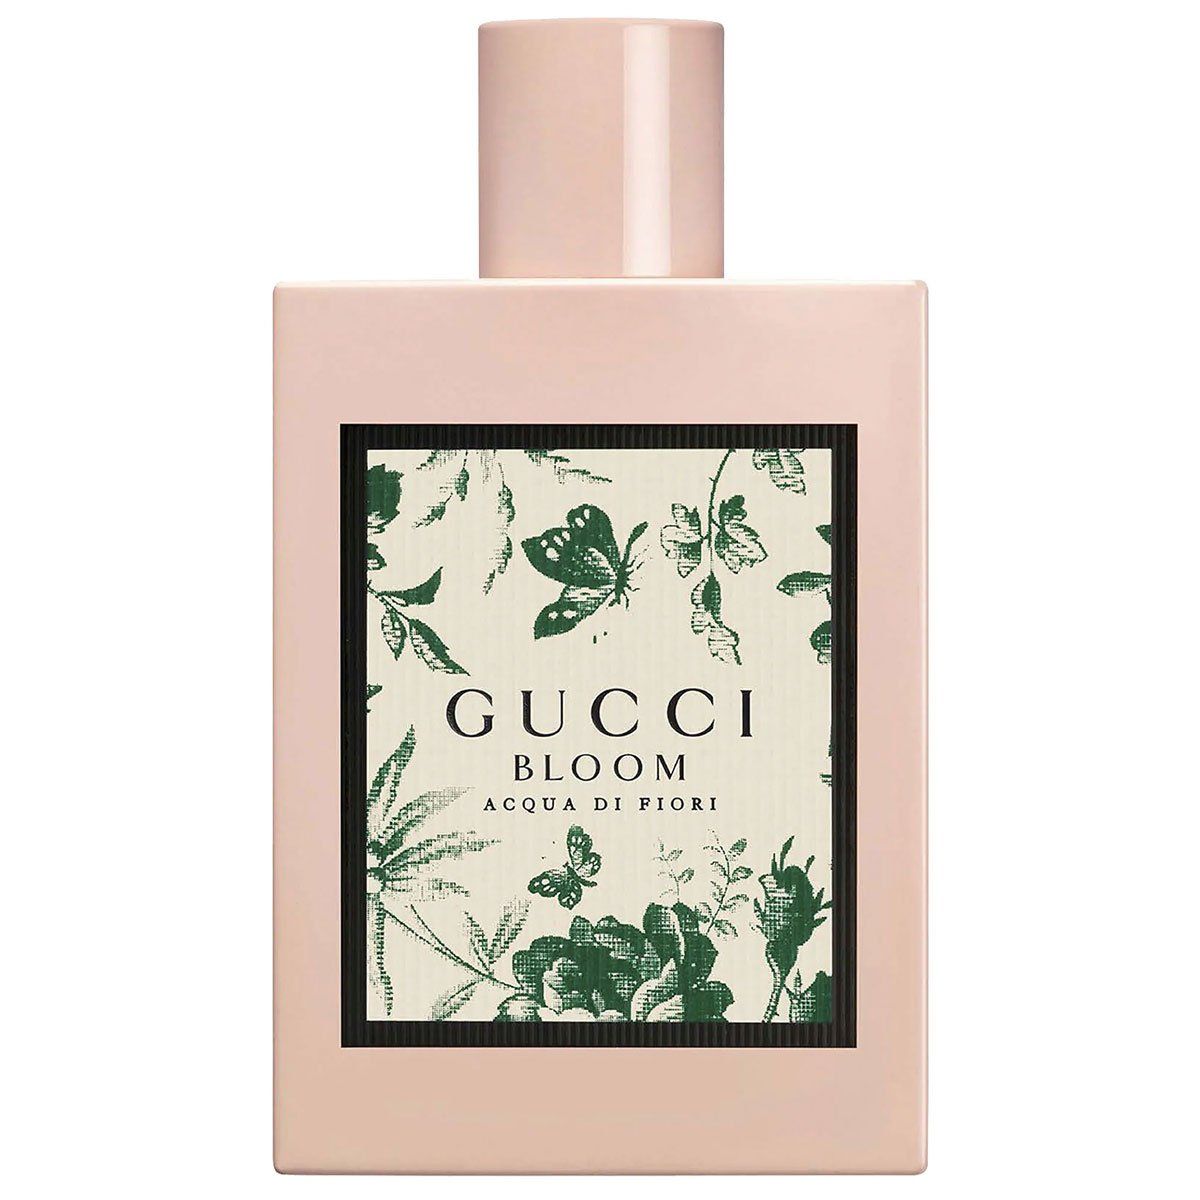  Gucci Bloom Acqua di Fiori Eau de Toilette For Her 